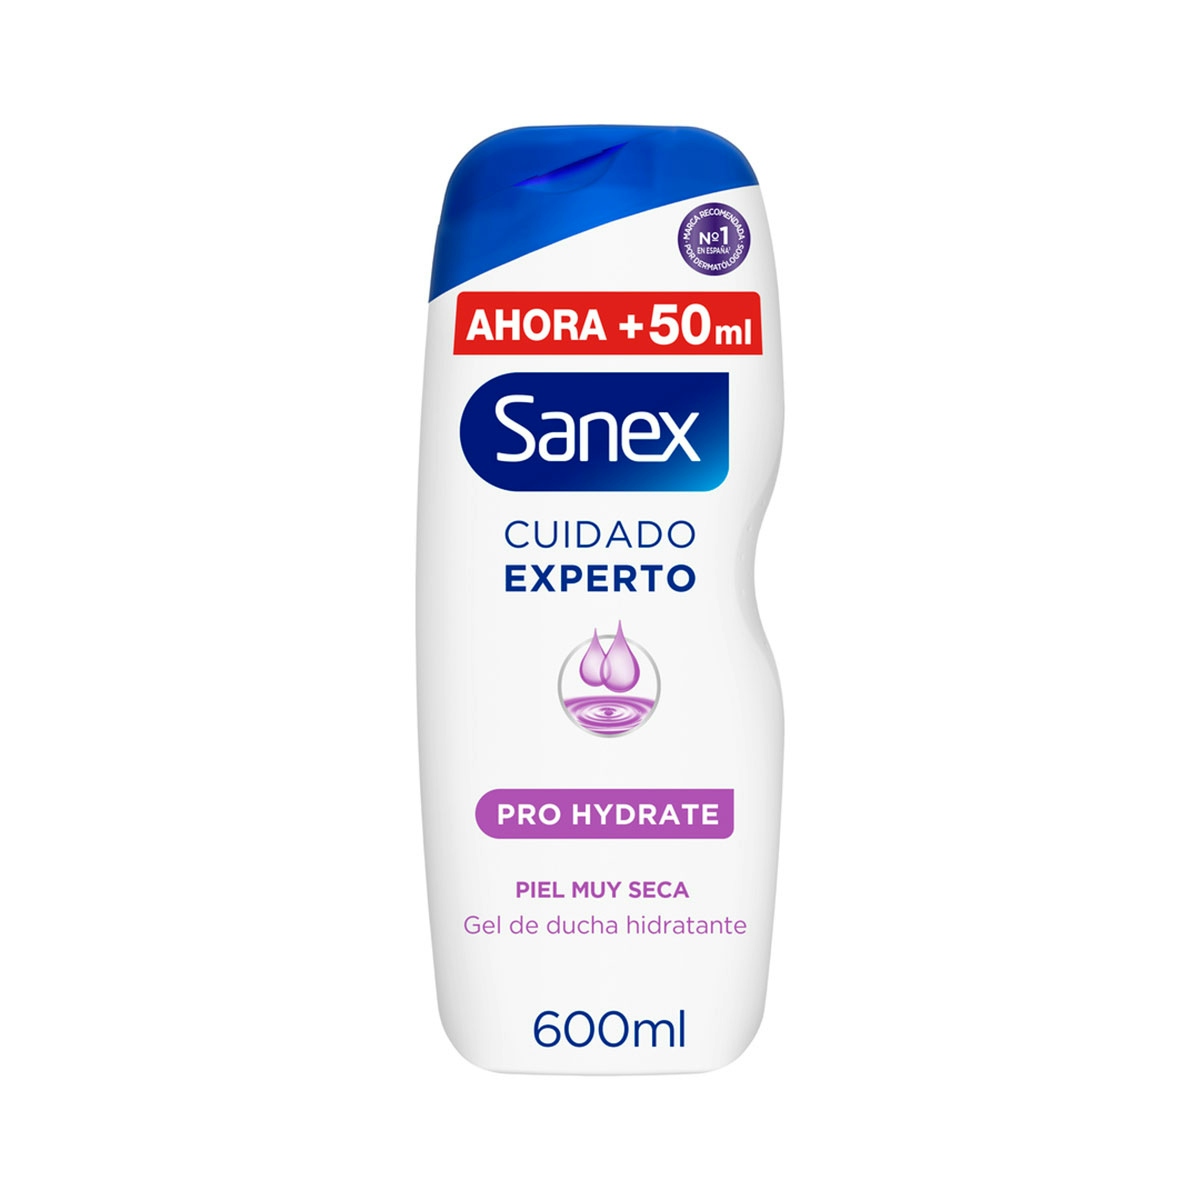 Gel de ducha o baño hidratante Sanex Cuidado Experto Pro Hydrate piel muy seca 600ml